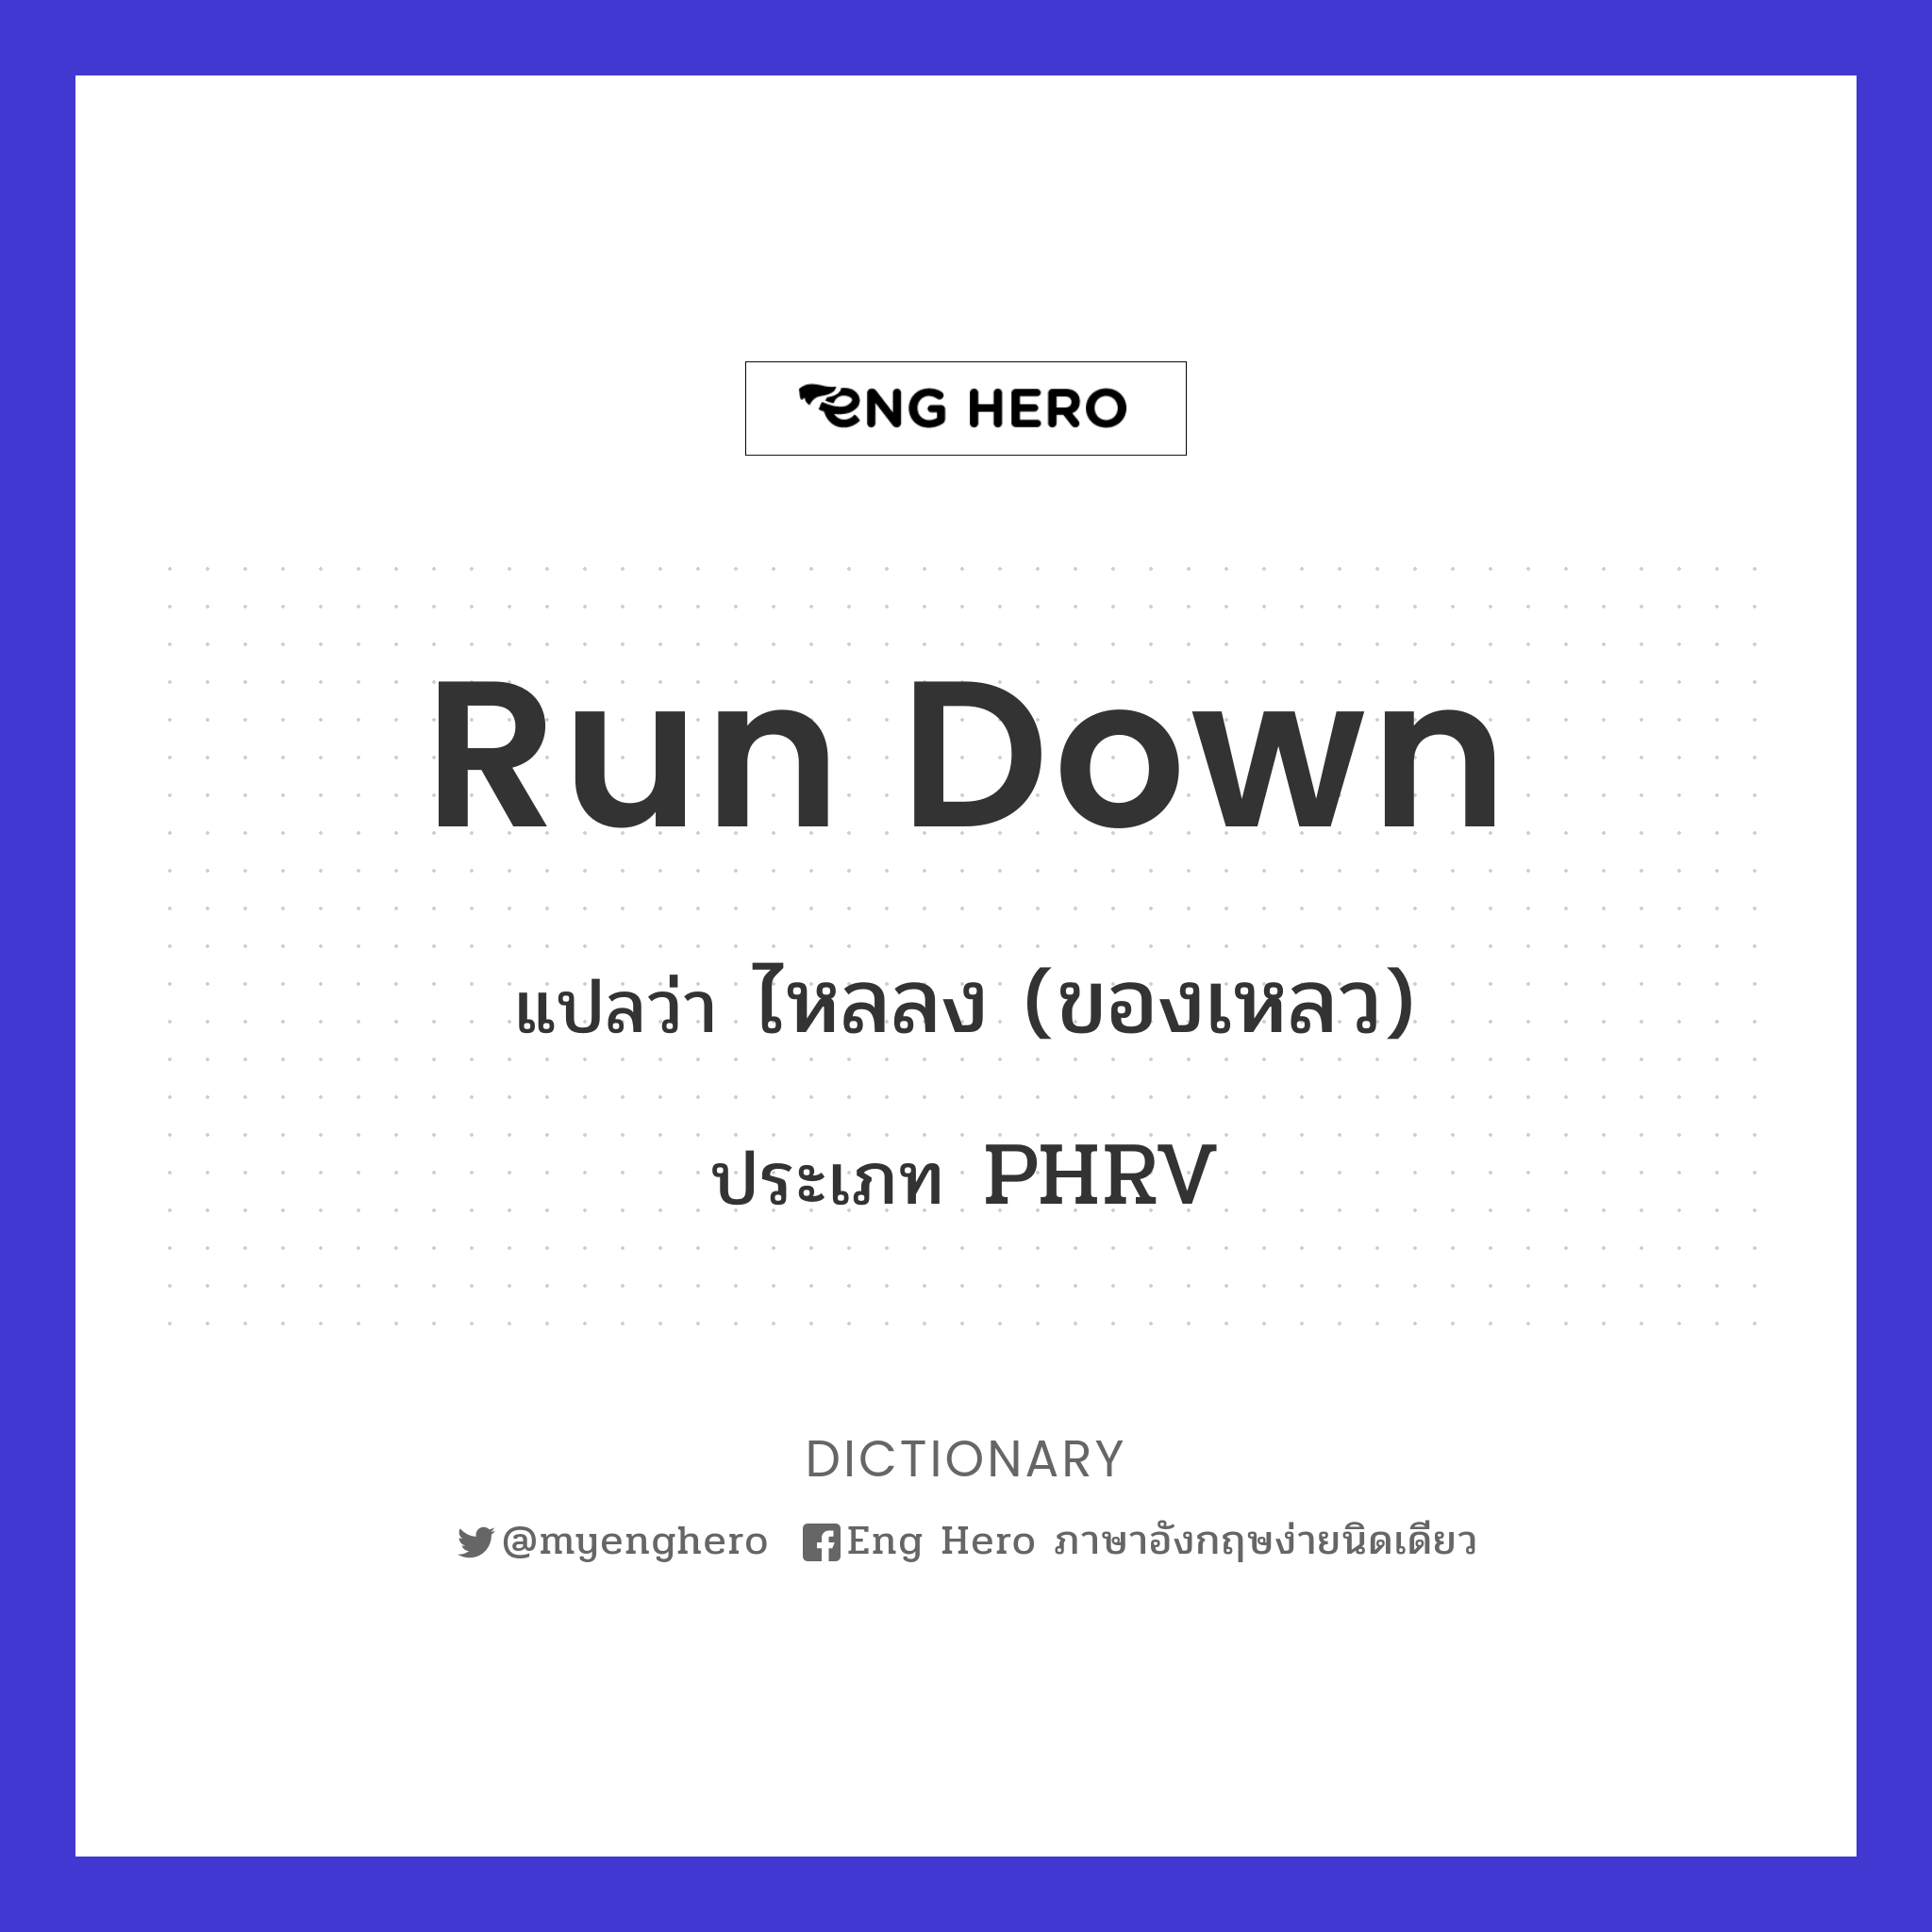 run down